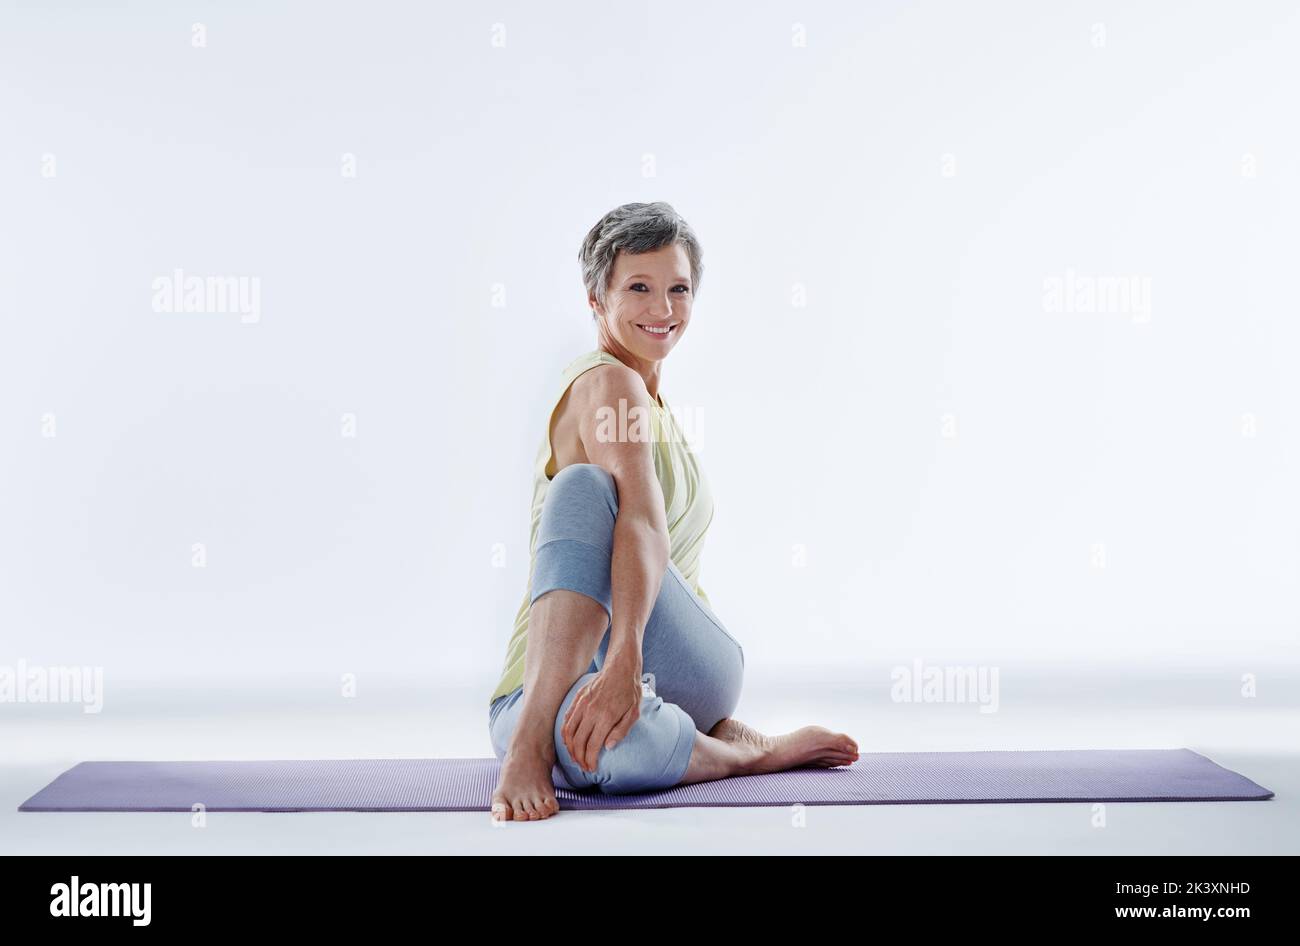 Mi stretgo sempre prima del mio allenamento. Ritratto completo di una donna attraente che si allunga prima dello yoga. Foto Stock